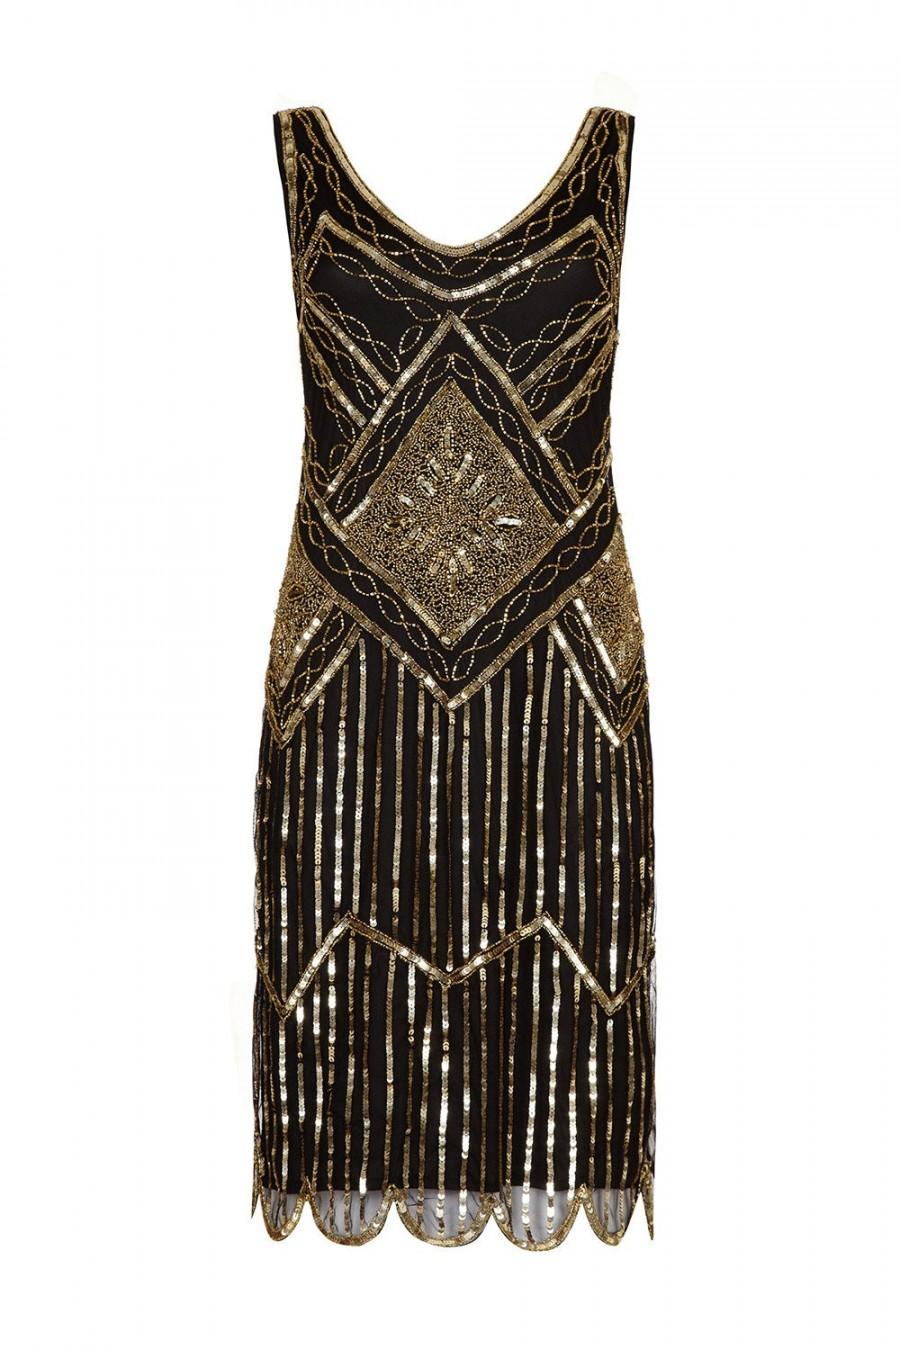 زفاف - PETITE Length UK20 US16 AUS20 Black Gold Vintage inspired 1920s Flapper Great Gatsby Charleston Sequin Downton Abbey Wedding Dress Hand Made